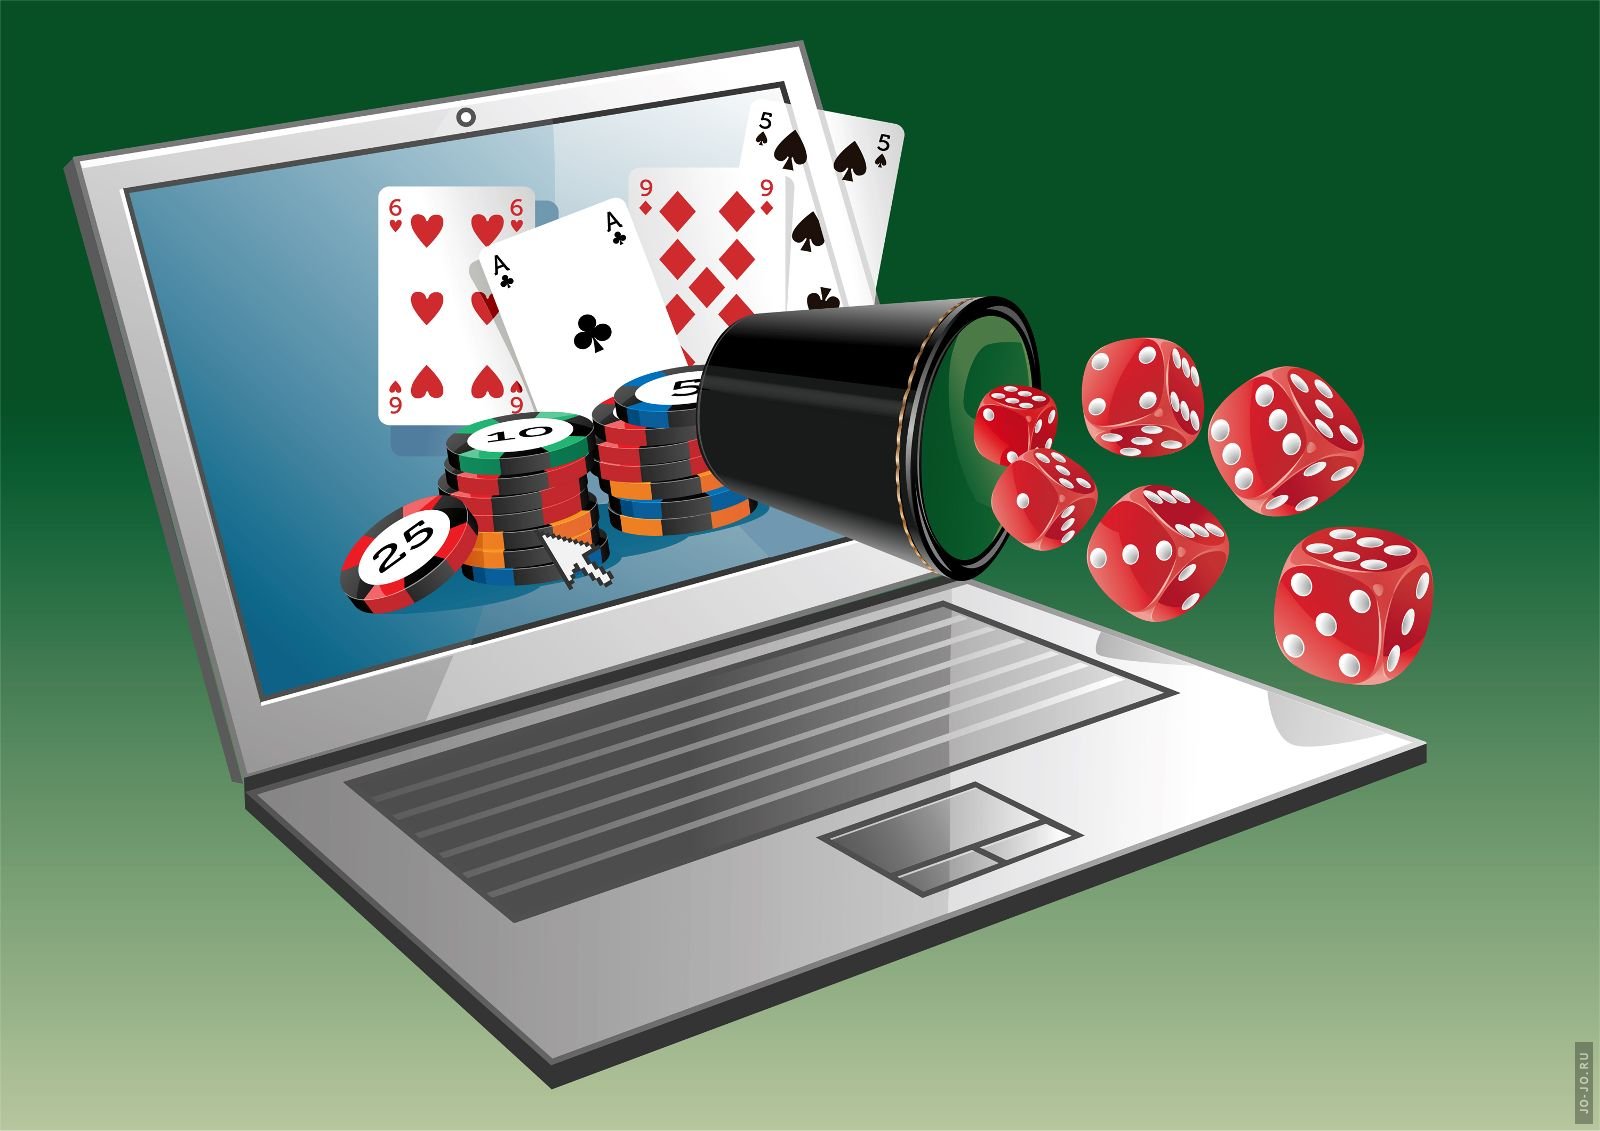 Правила игр и другая информация о казино онлайн на портале Азартопедия